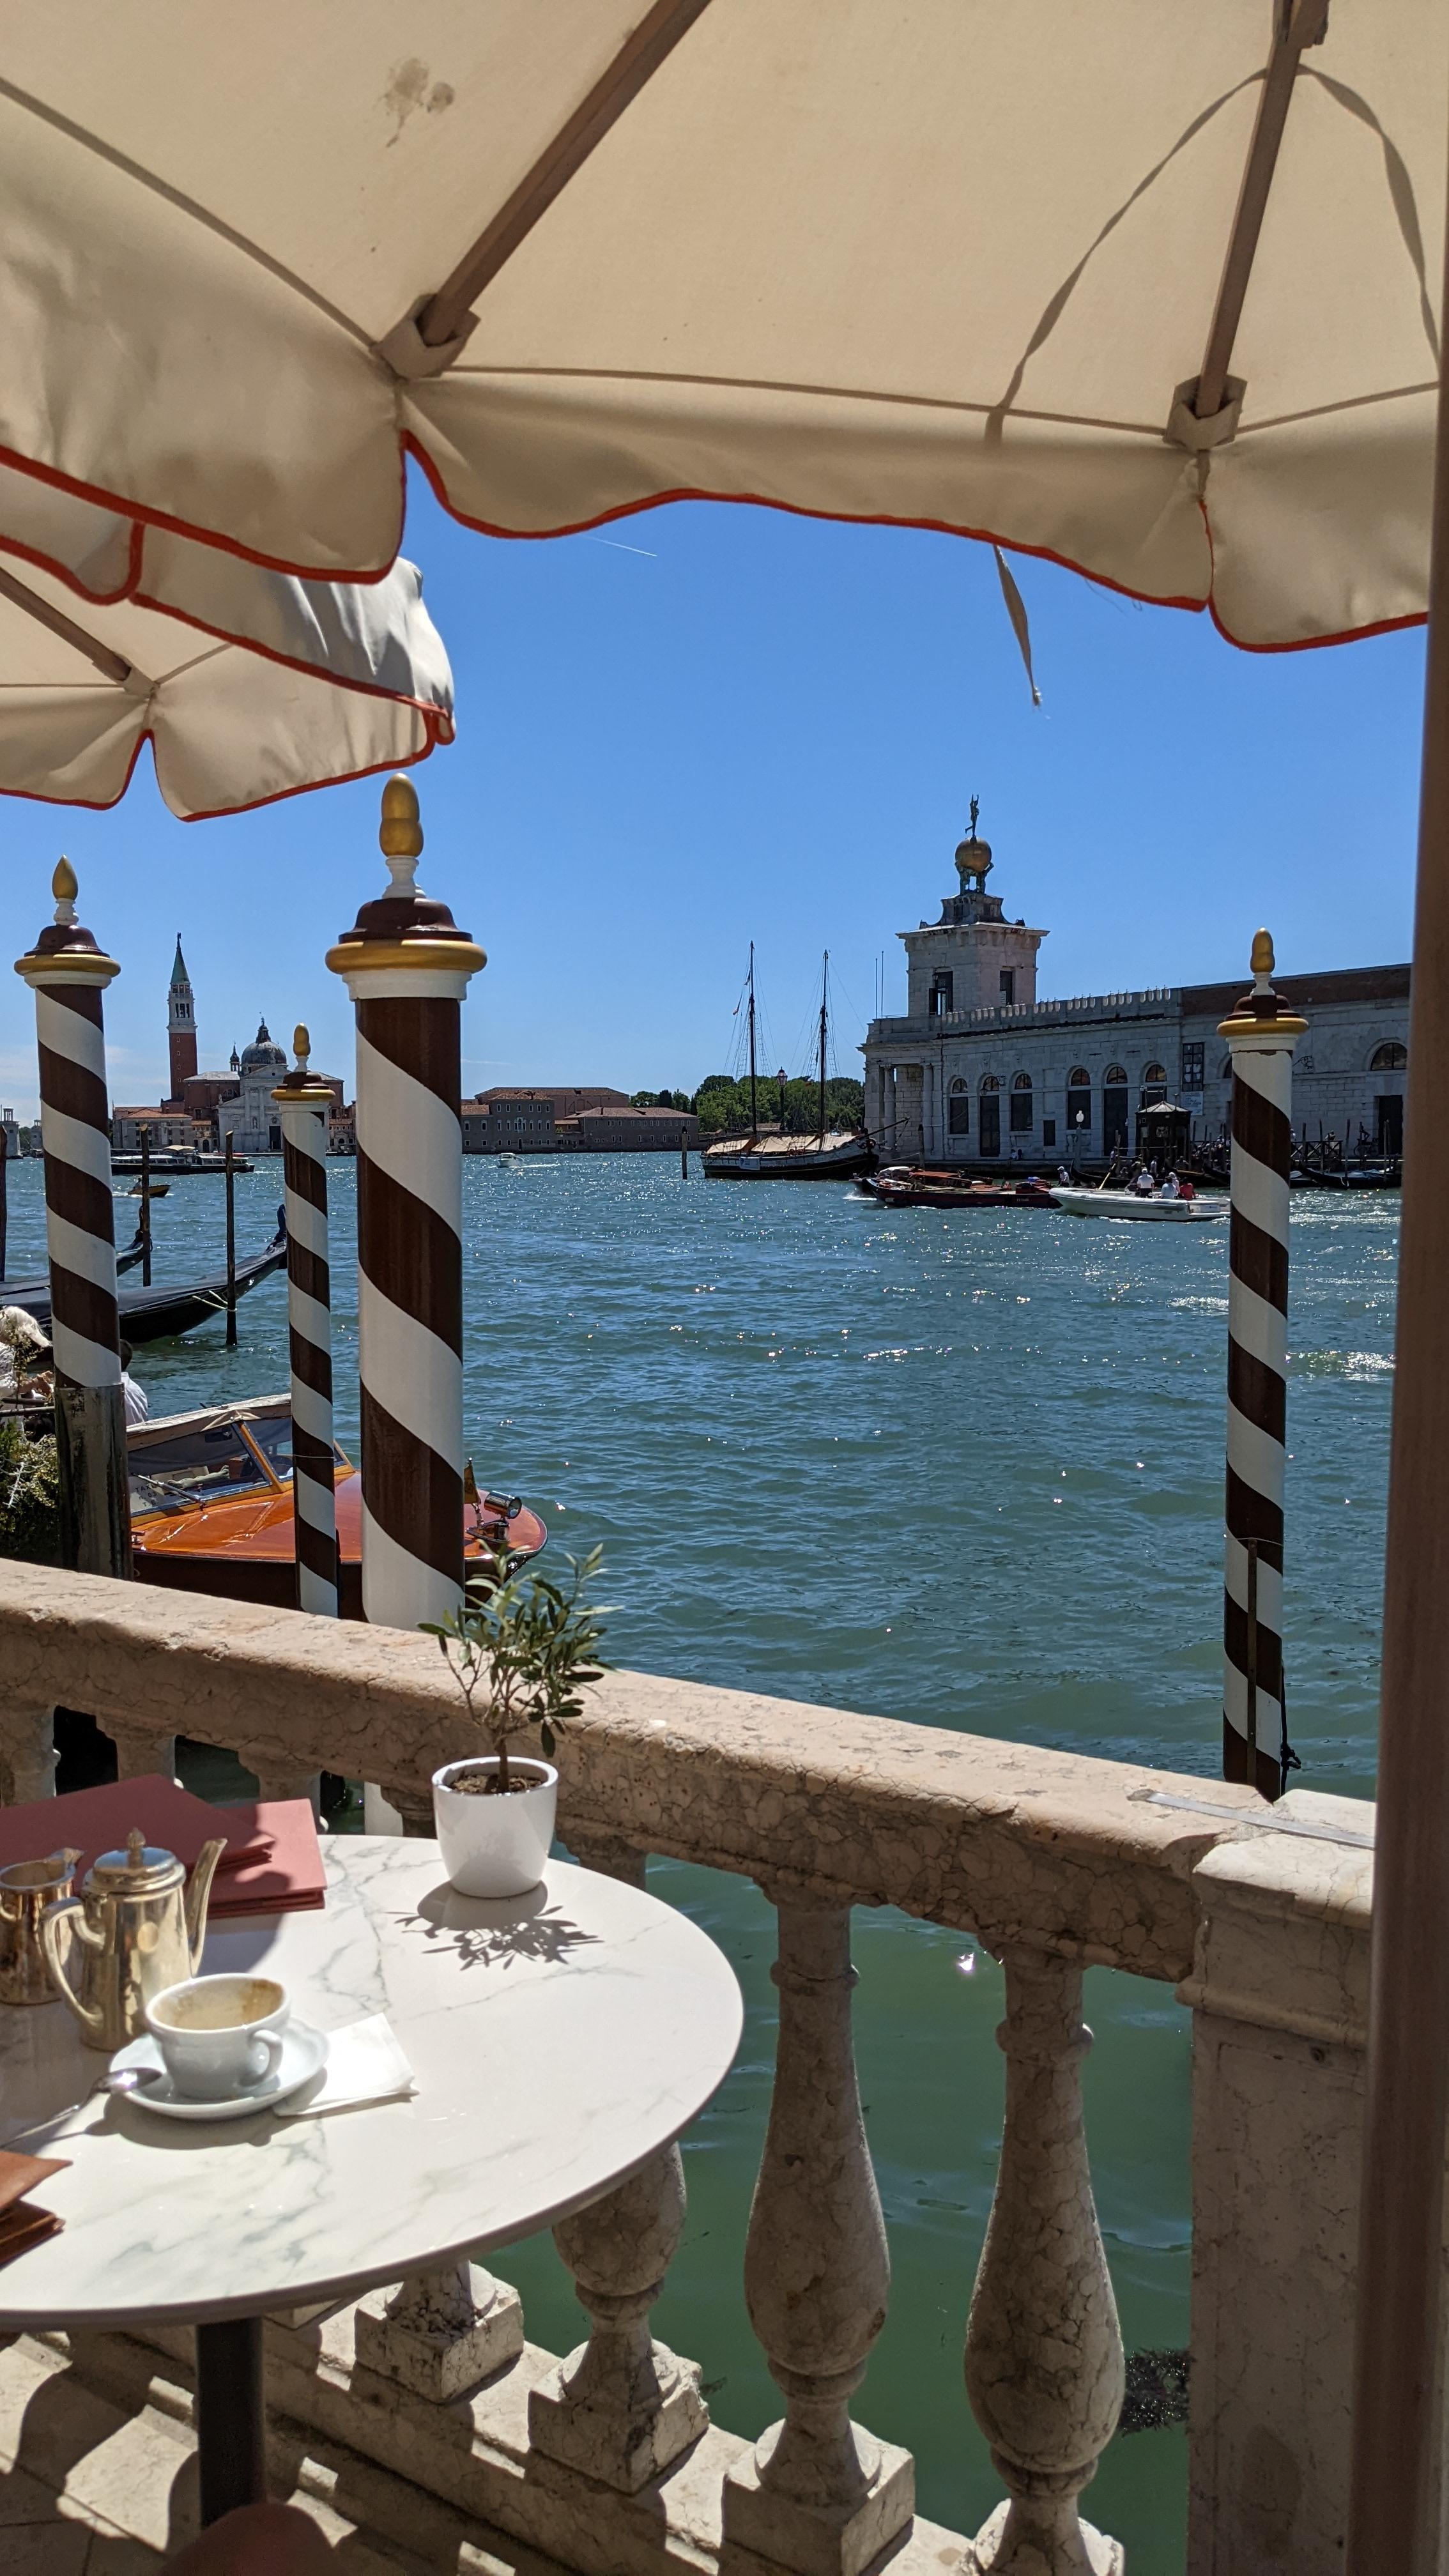 Wir waren vor ein paar Tagen in Venedig. Es war herrlich ☀️
#urlaub #italien